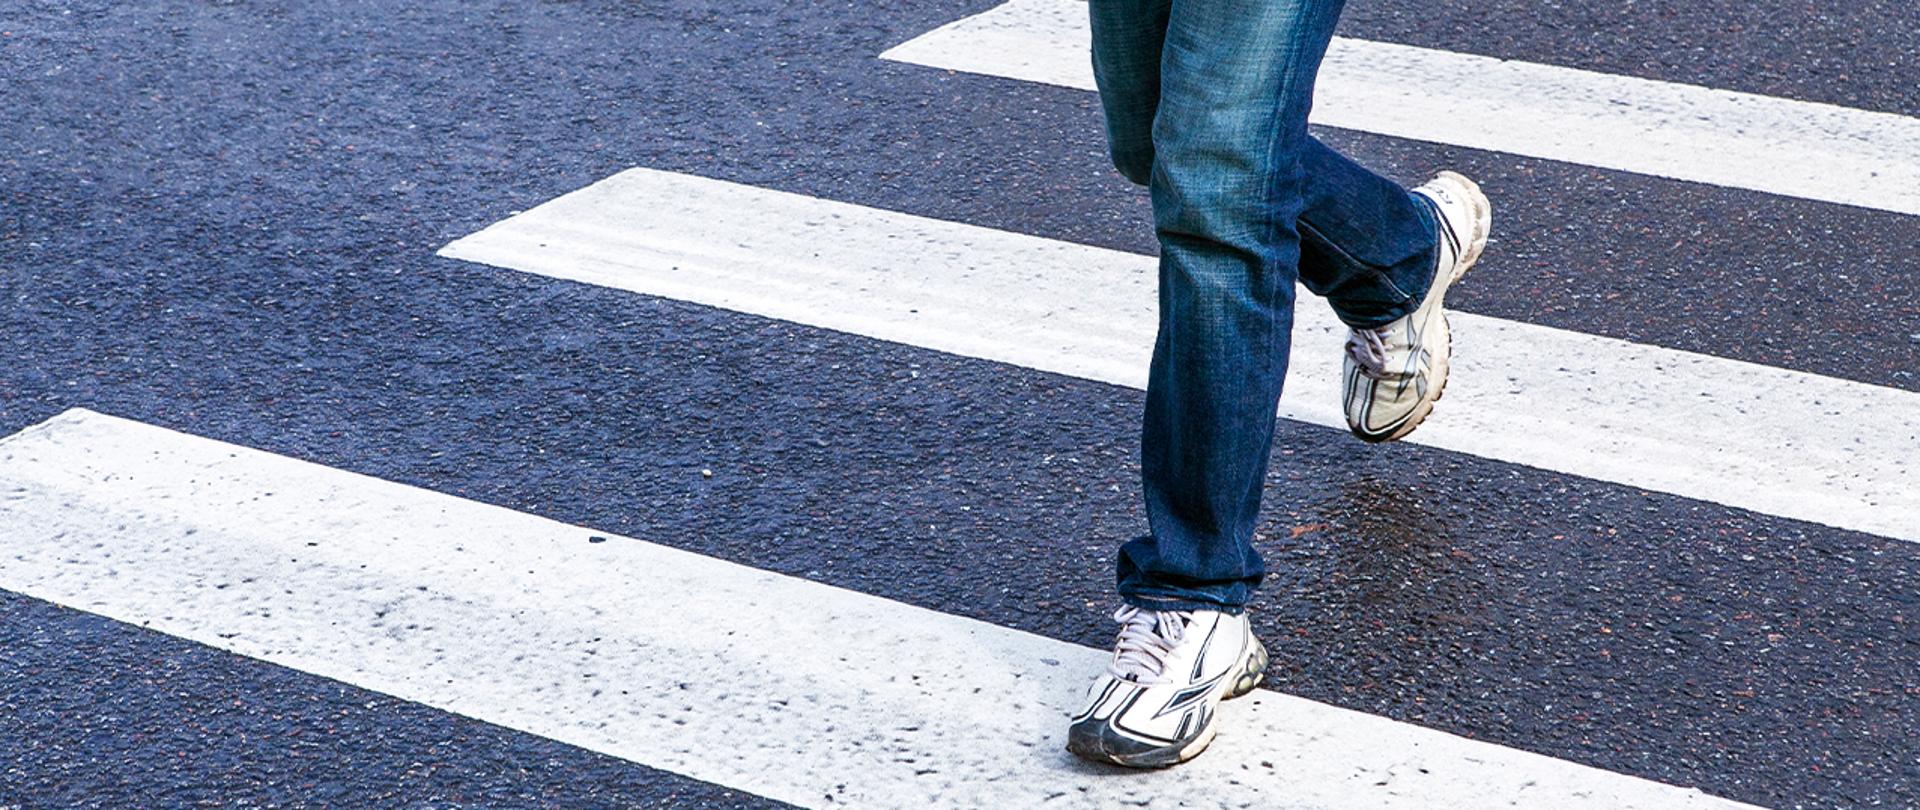 Na zdjeciu widoczne są nogi osoby przechodzącej przez przejście dla pieszych.